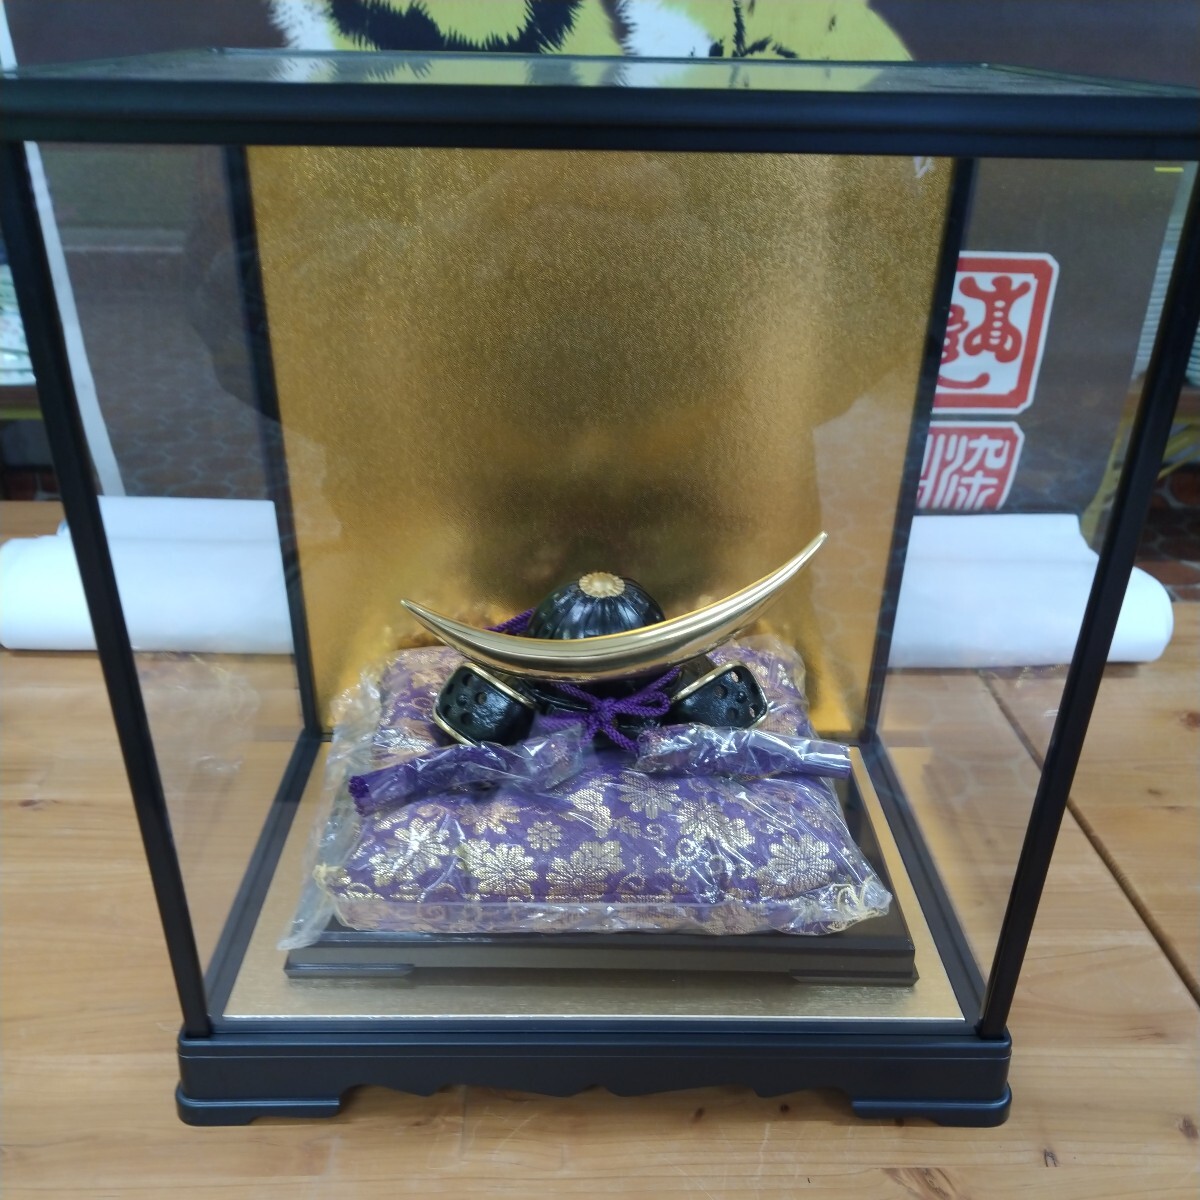 五月かぶと飾りガラスケース入り　伊達政宗かぶと　高岡鋳物の製品です。ガラスケースは組立式です。サイズ…幅32cm　高さ35cm 奥行25cm